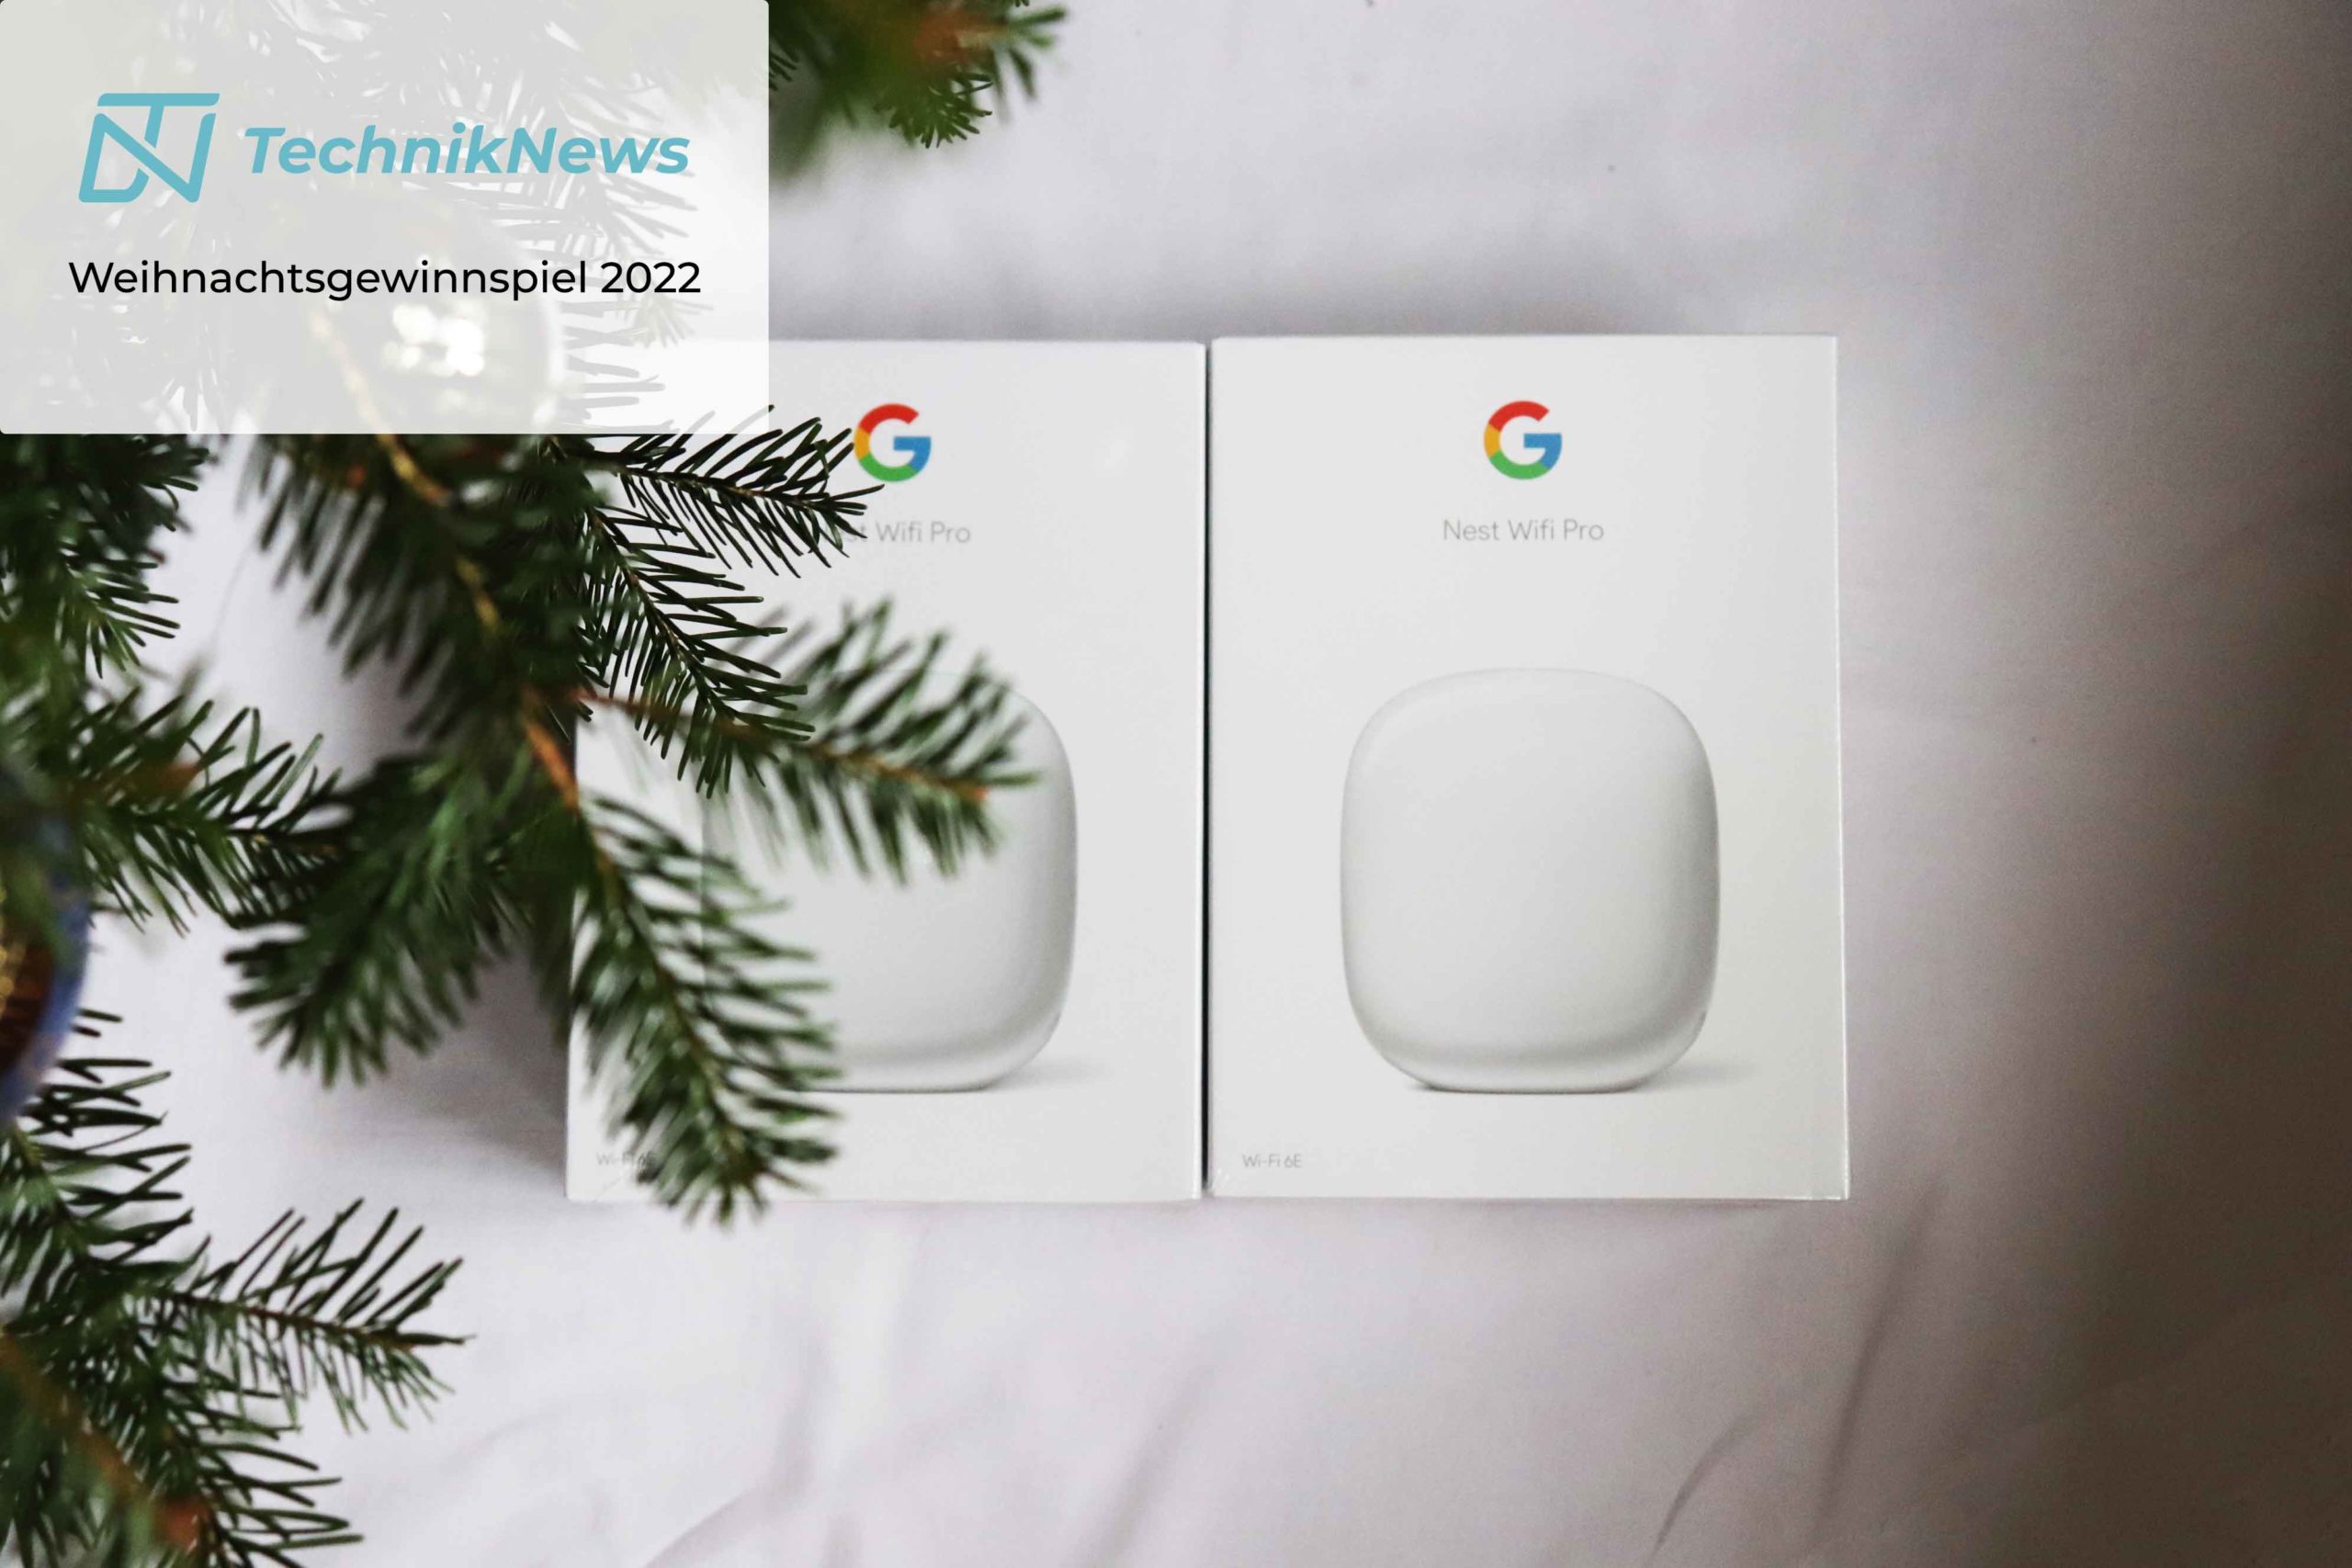 TechnikNews Weihnachtsgewinnspiel 2022 Google Nest Wifi Pro